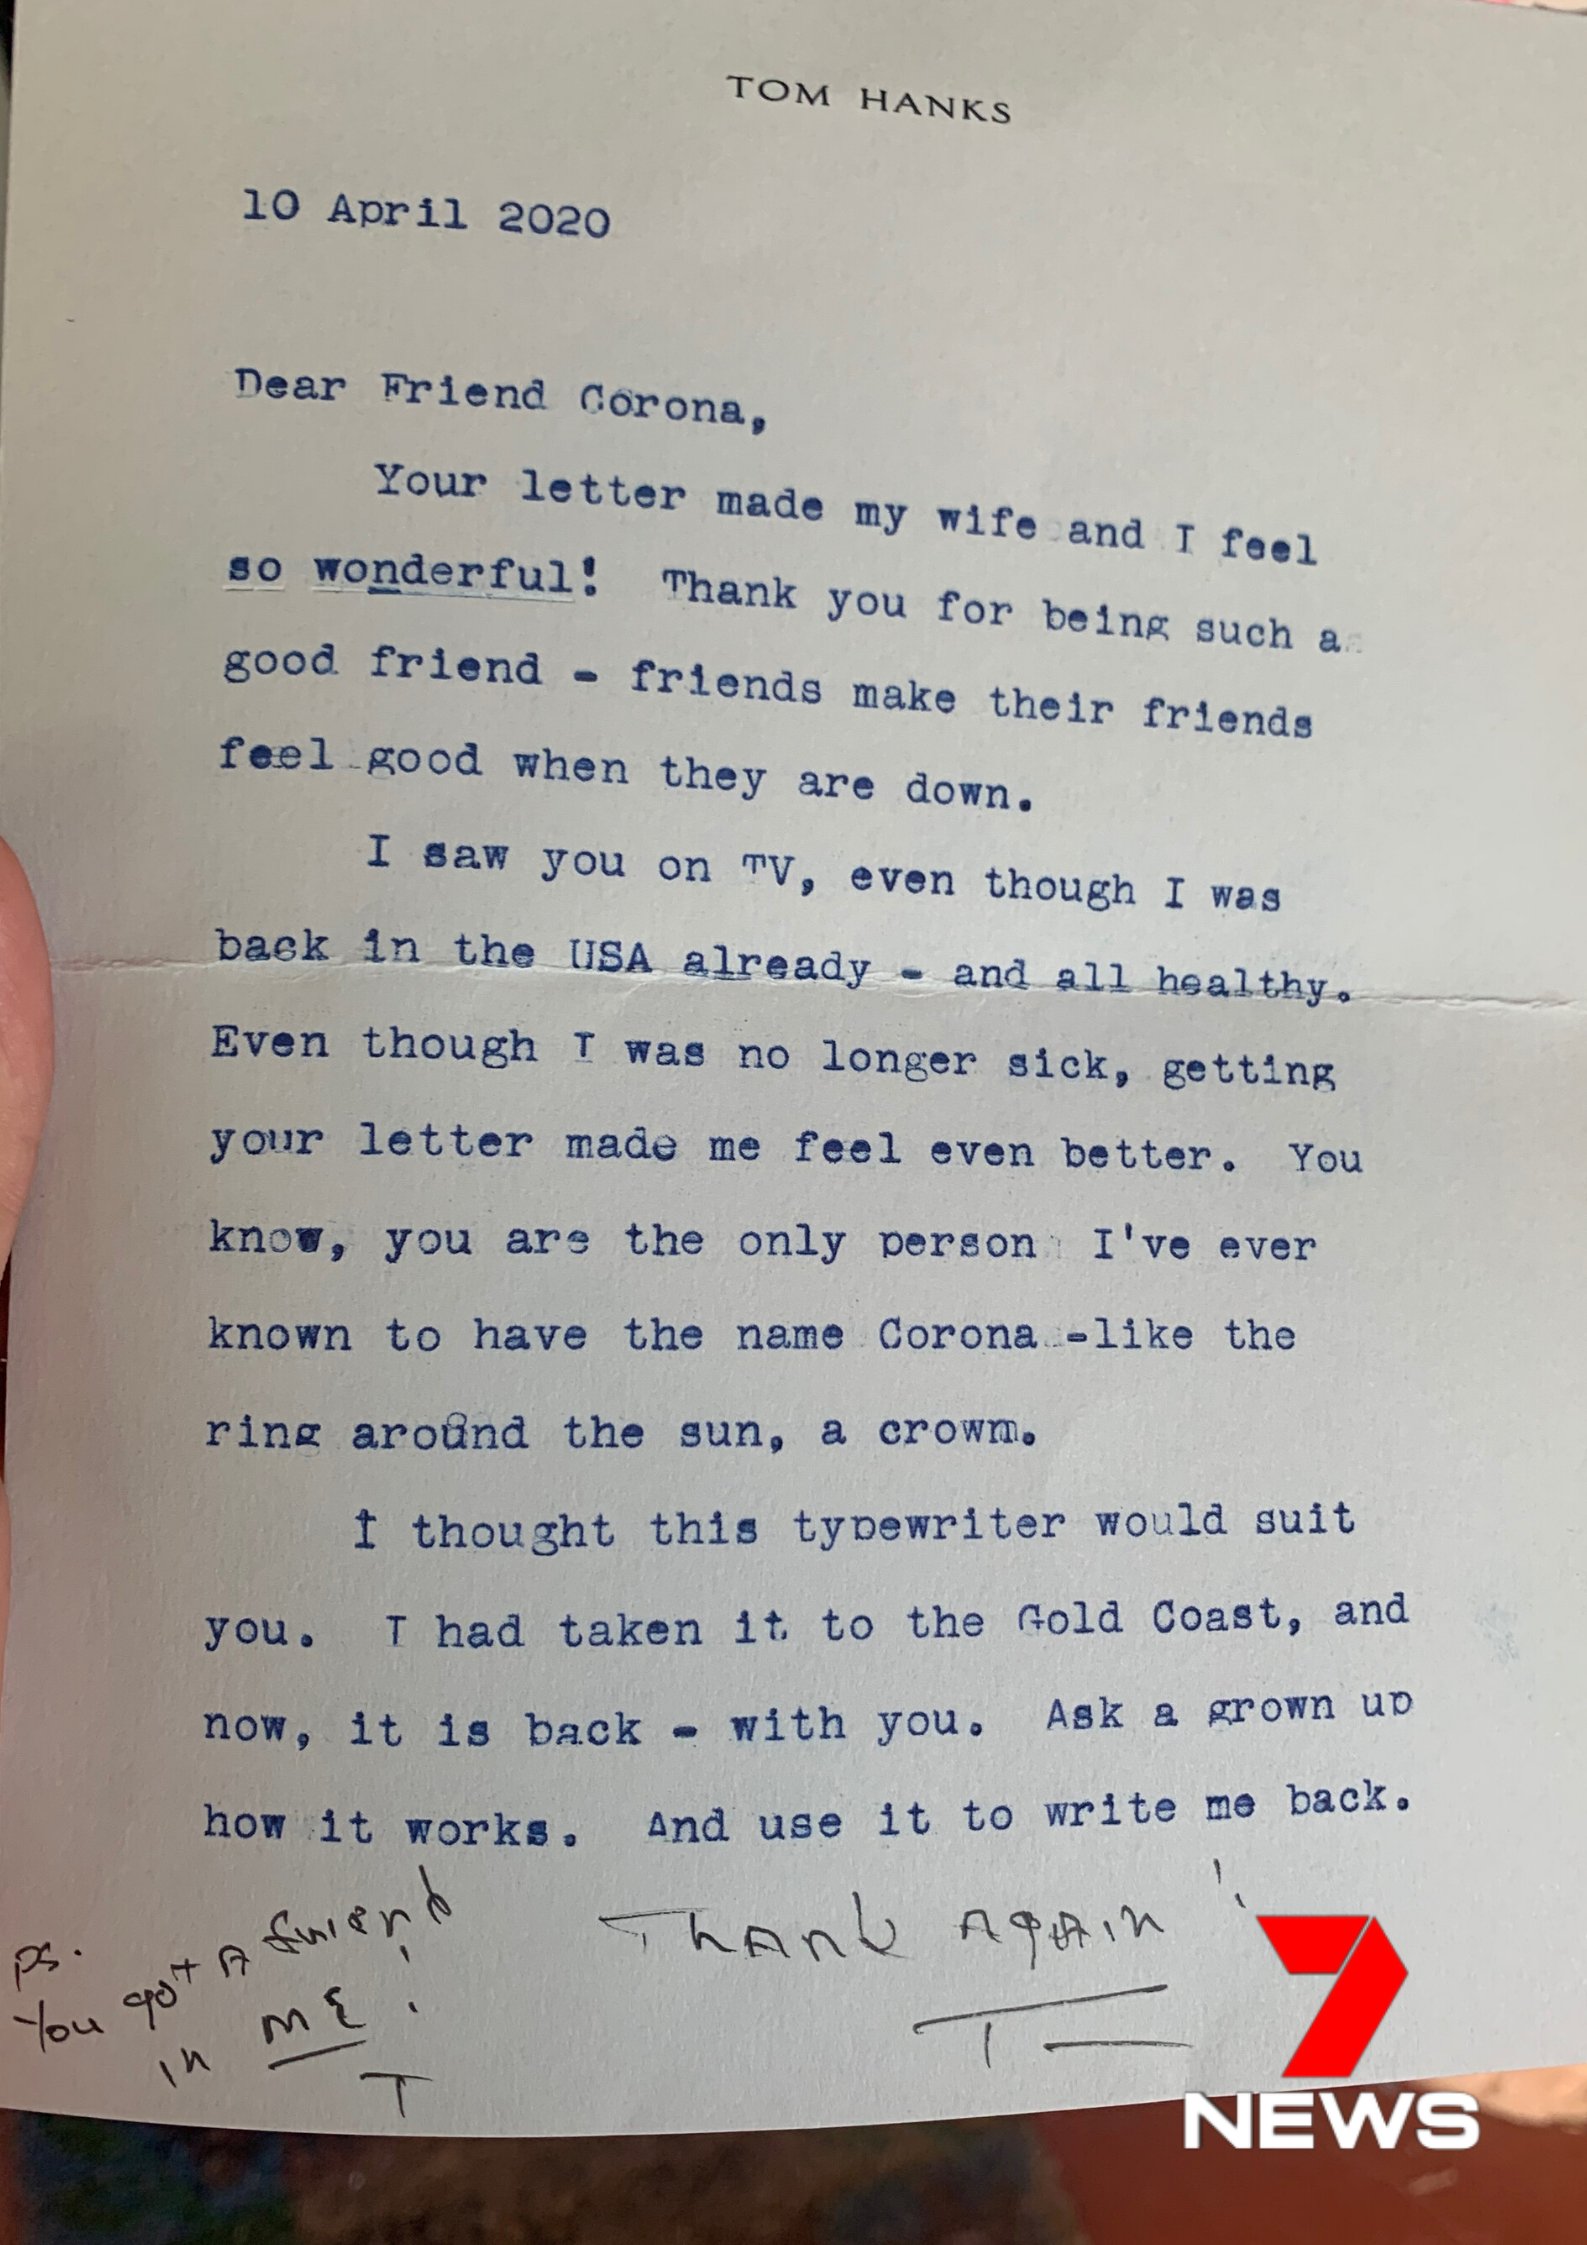 الرسالة التي كتبها توم هانكس للصبي الأسترالي